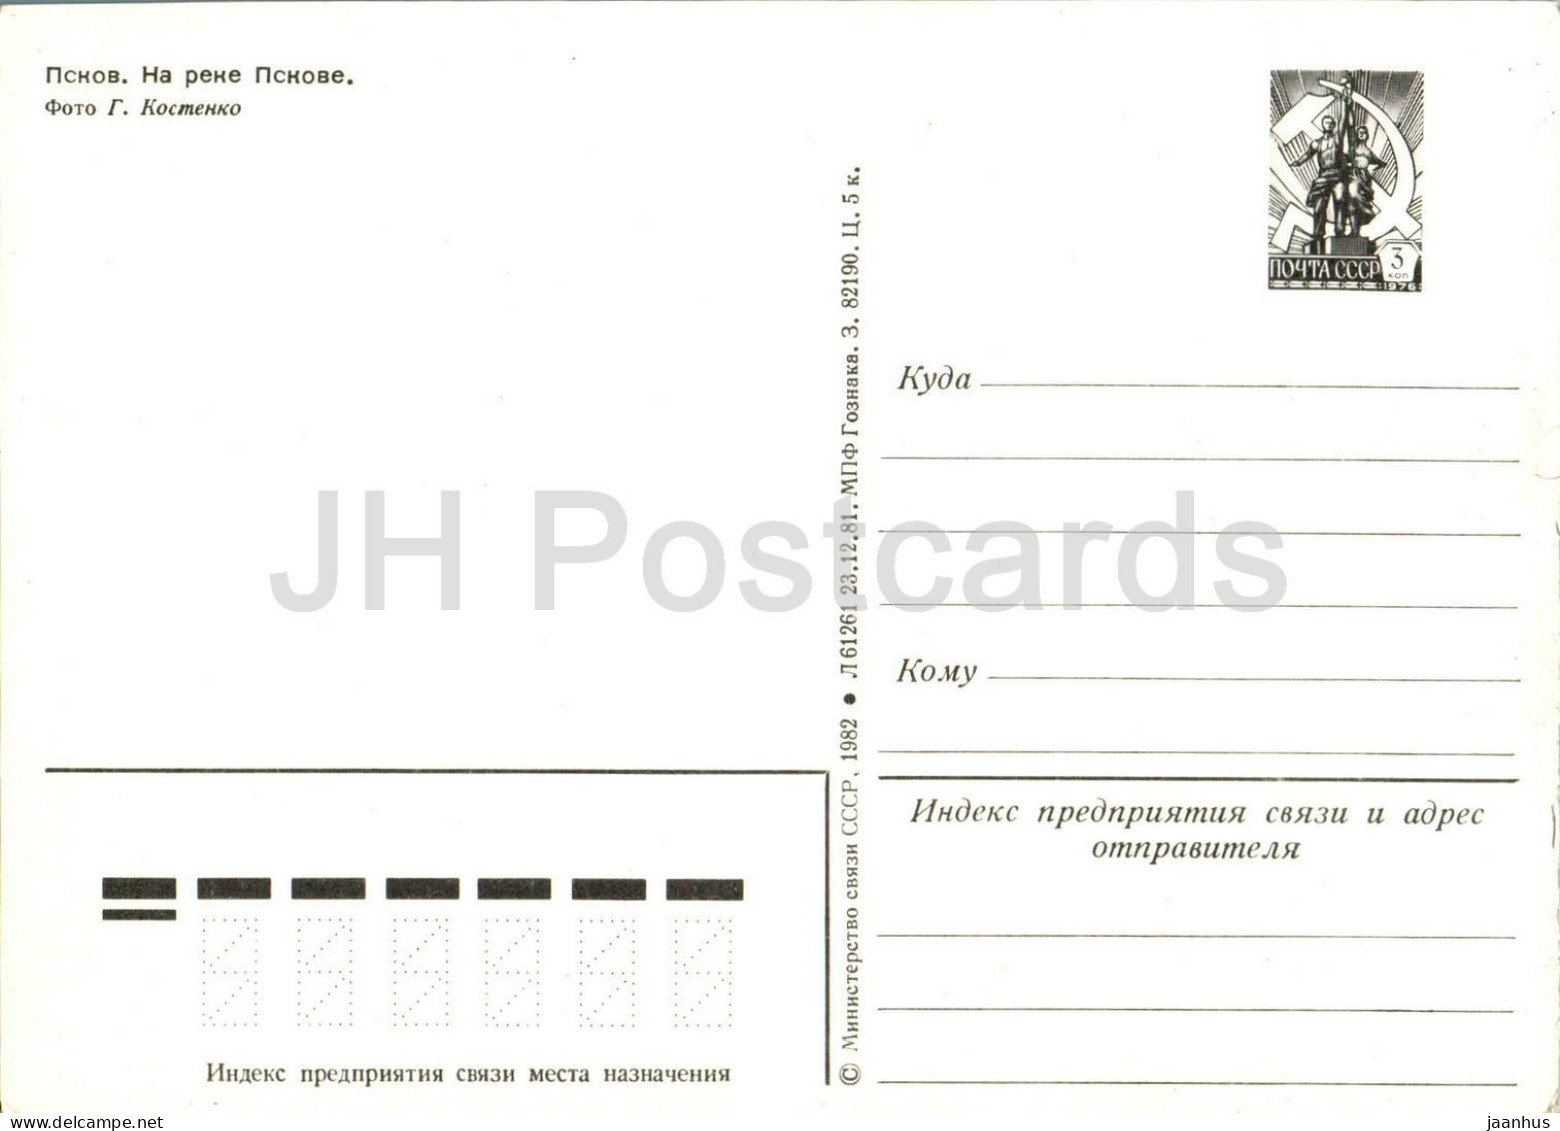 Pskov - Pskov River - Postal Stationery - 1982 - Russia USSR - Unused - Rusland